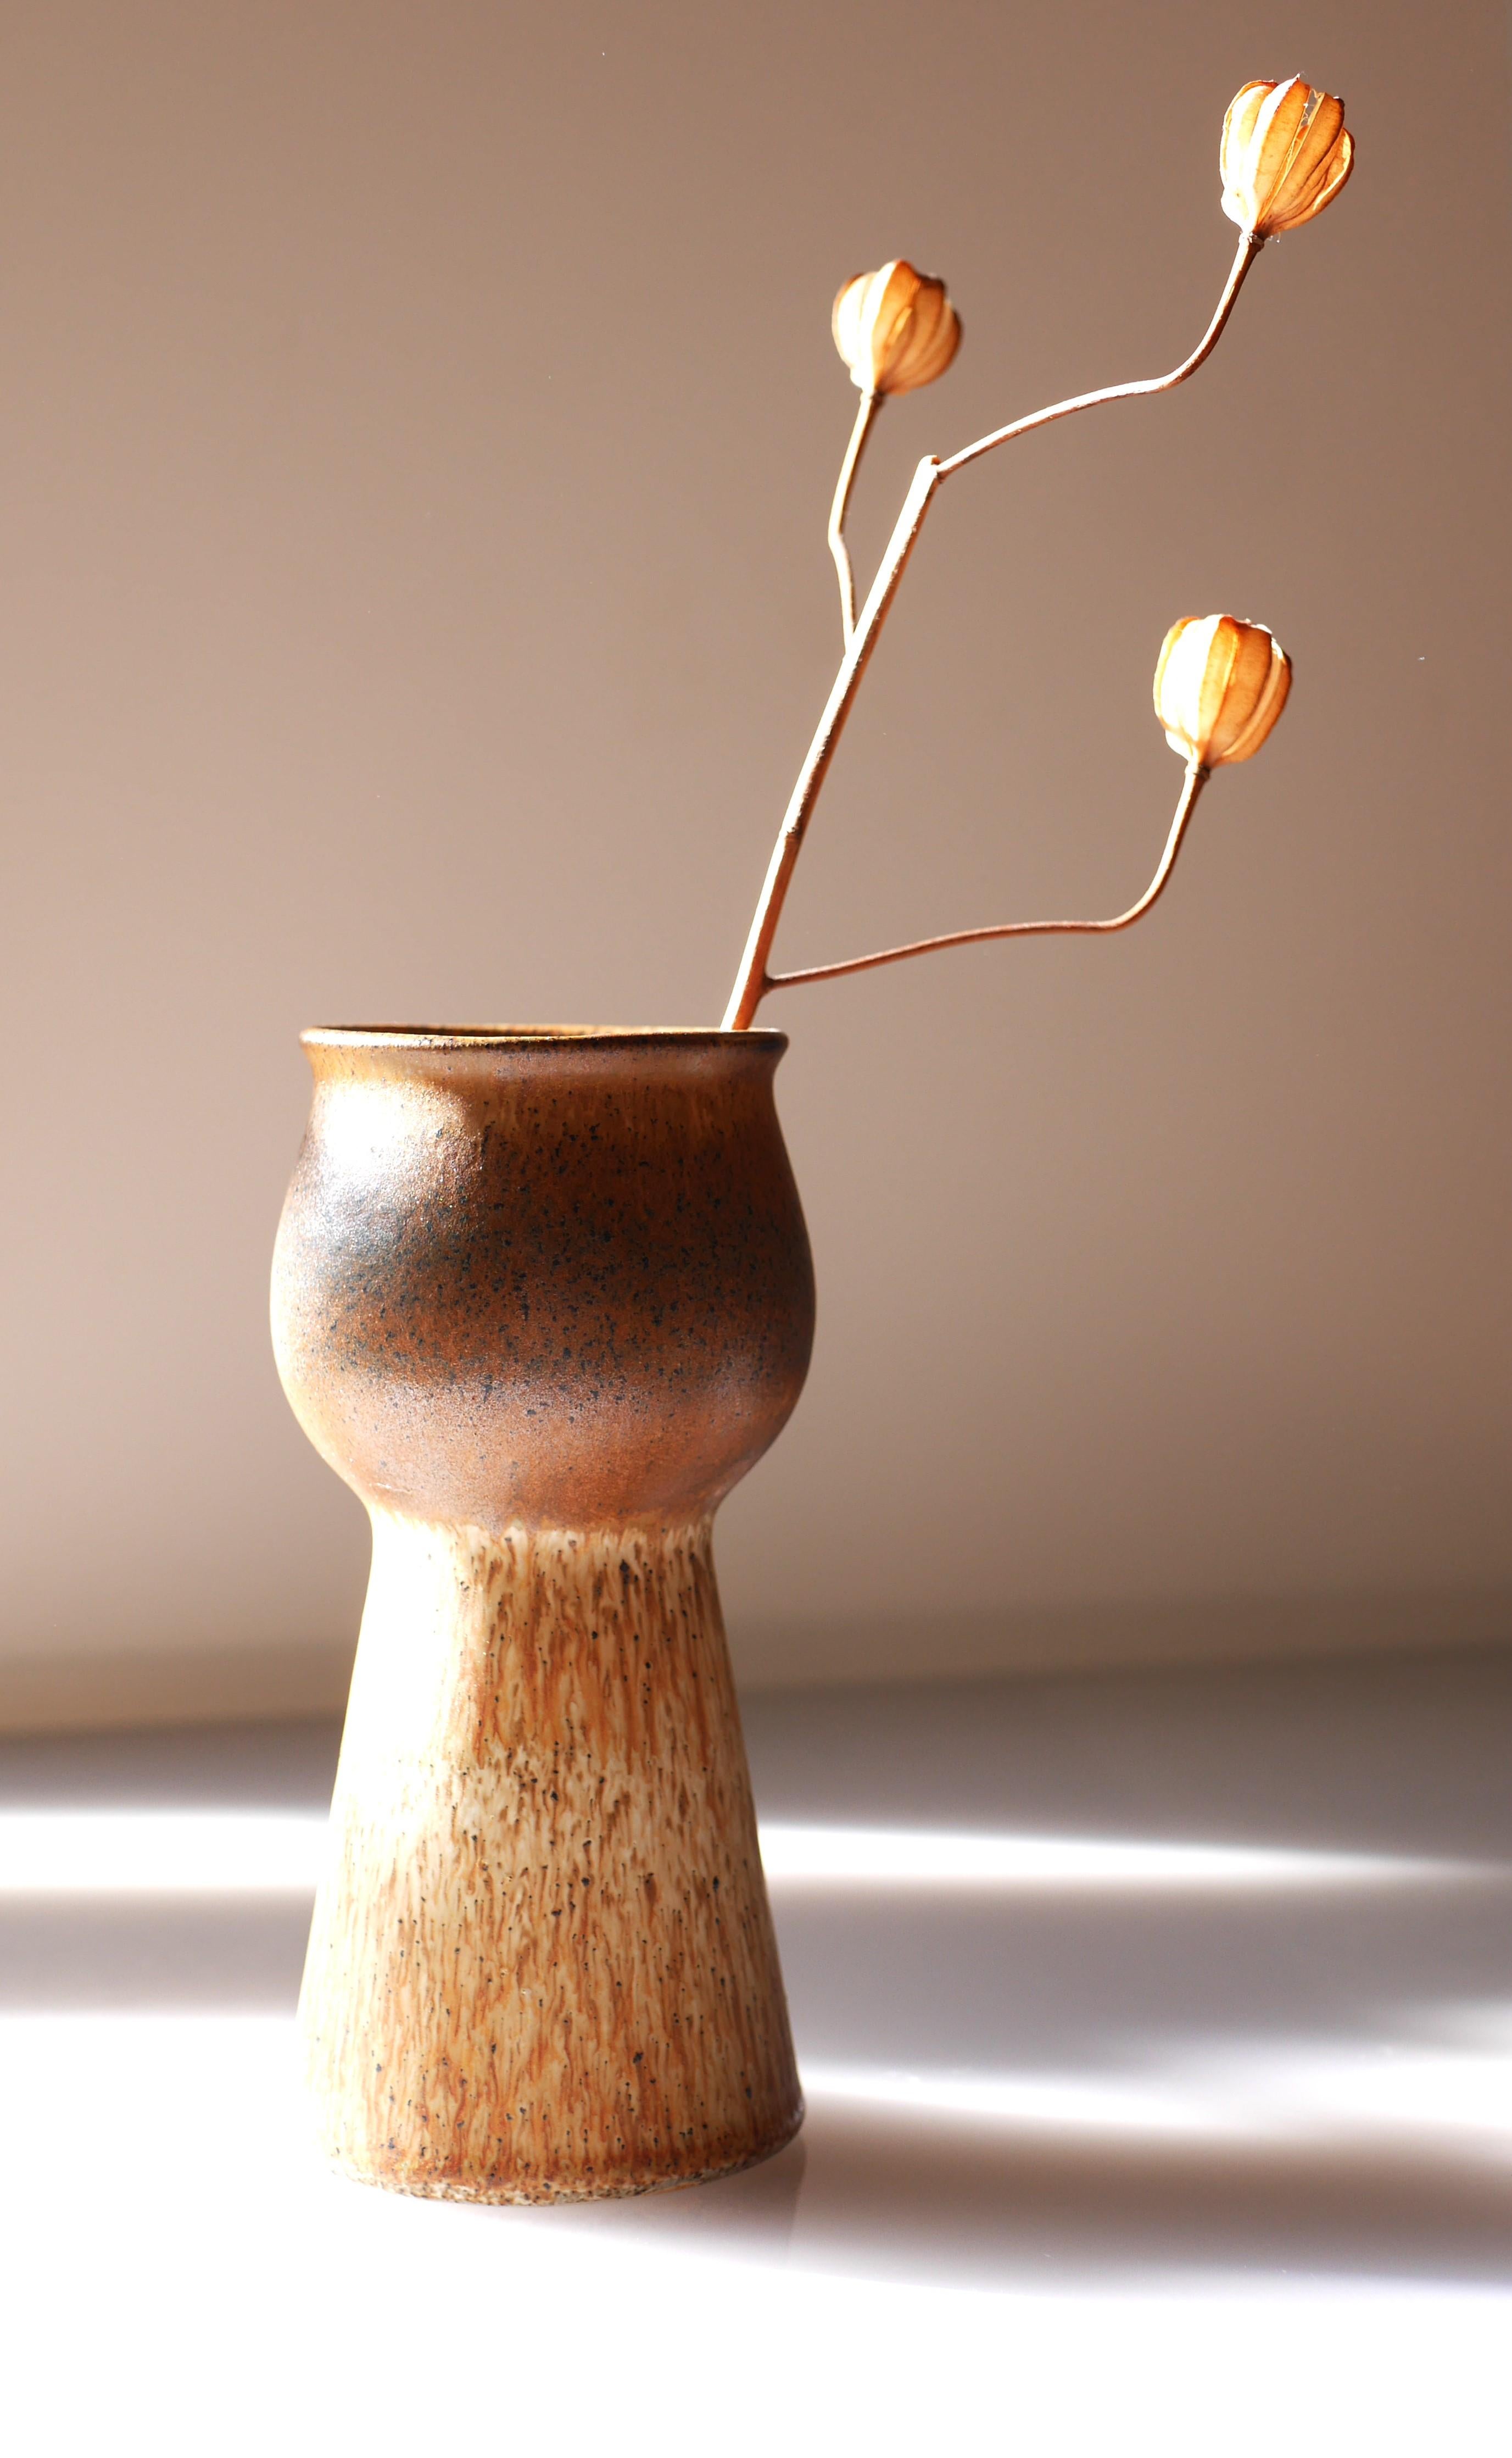 Un vase en céramique très spécial, qui est vraiment cool et qui donne une impression des années 70. Il est fabriqué en grès et sa texture est lisse, mais combinée à une étonnante glaçure en forme de clavecin, qui donne une impression au vase. La